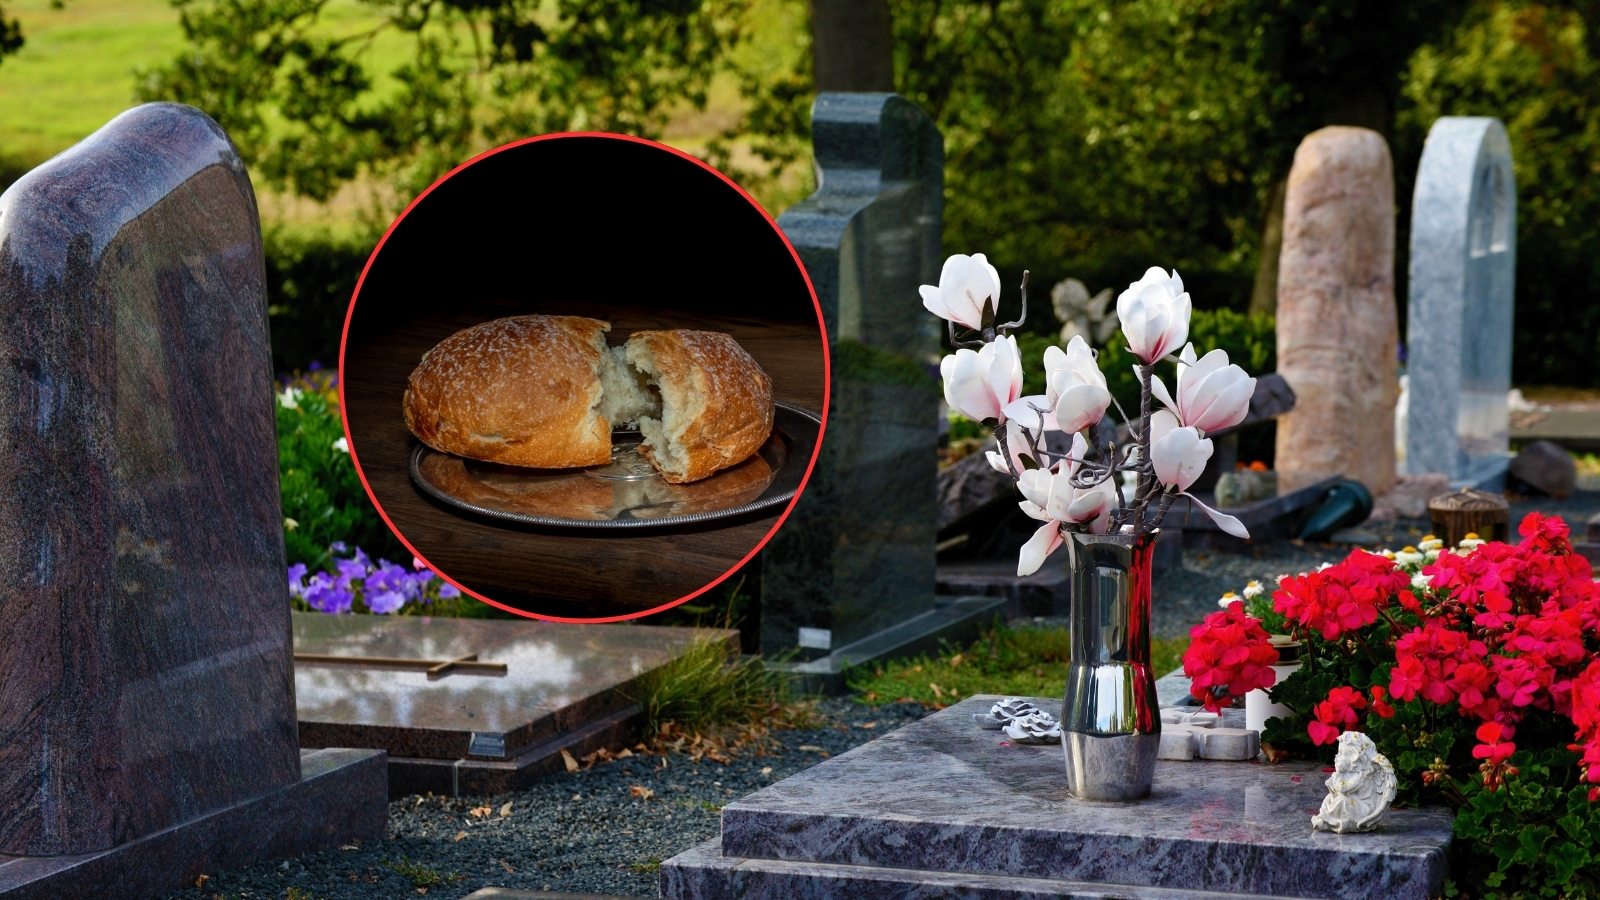 Zašto pravoslavci donose hranu na grobove pokojnika?